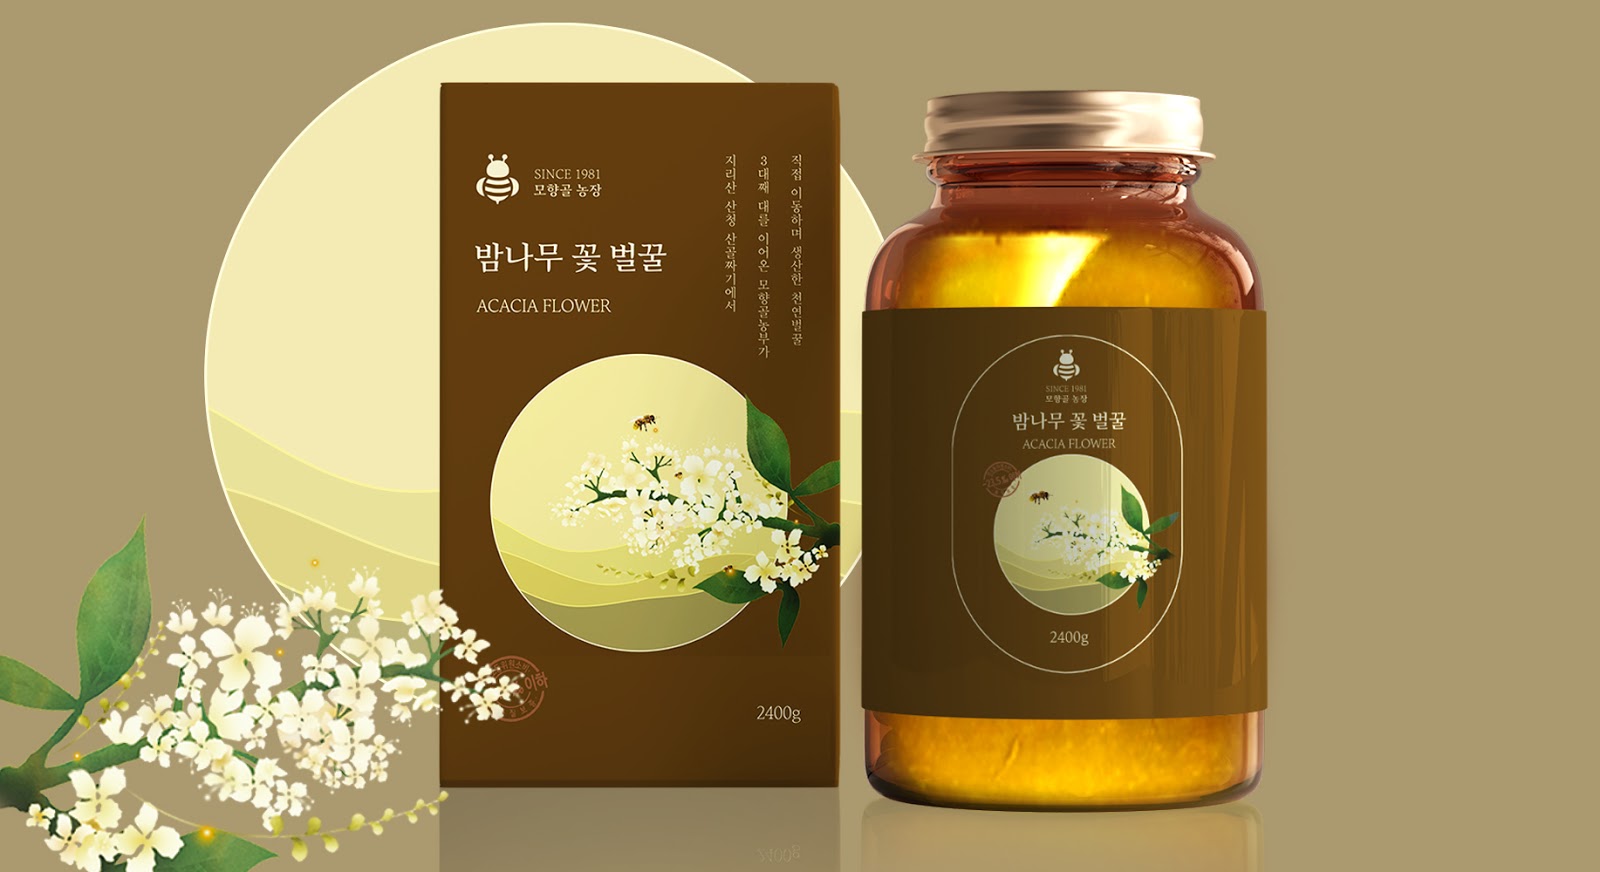 韩国传统蜂蜜包装设计